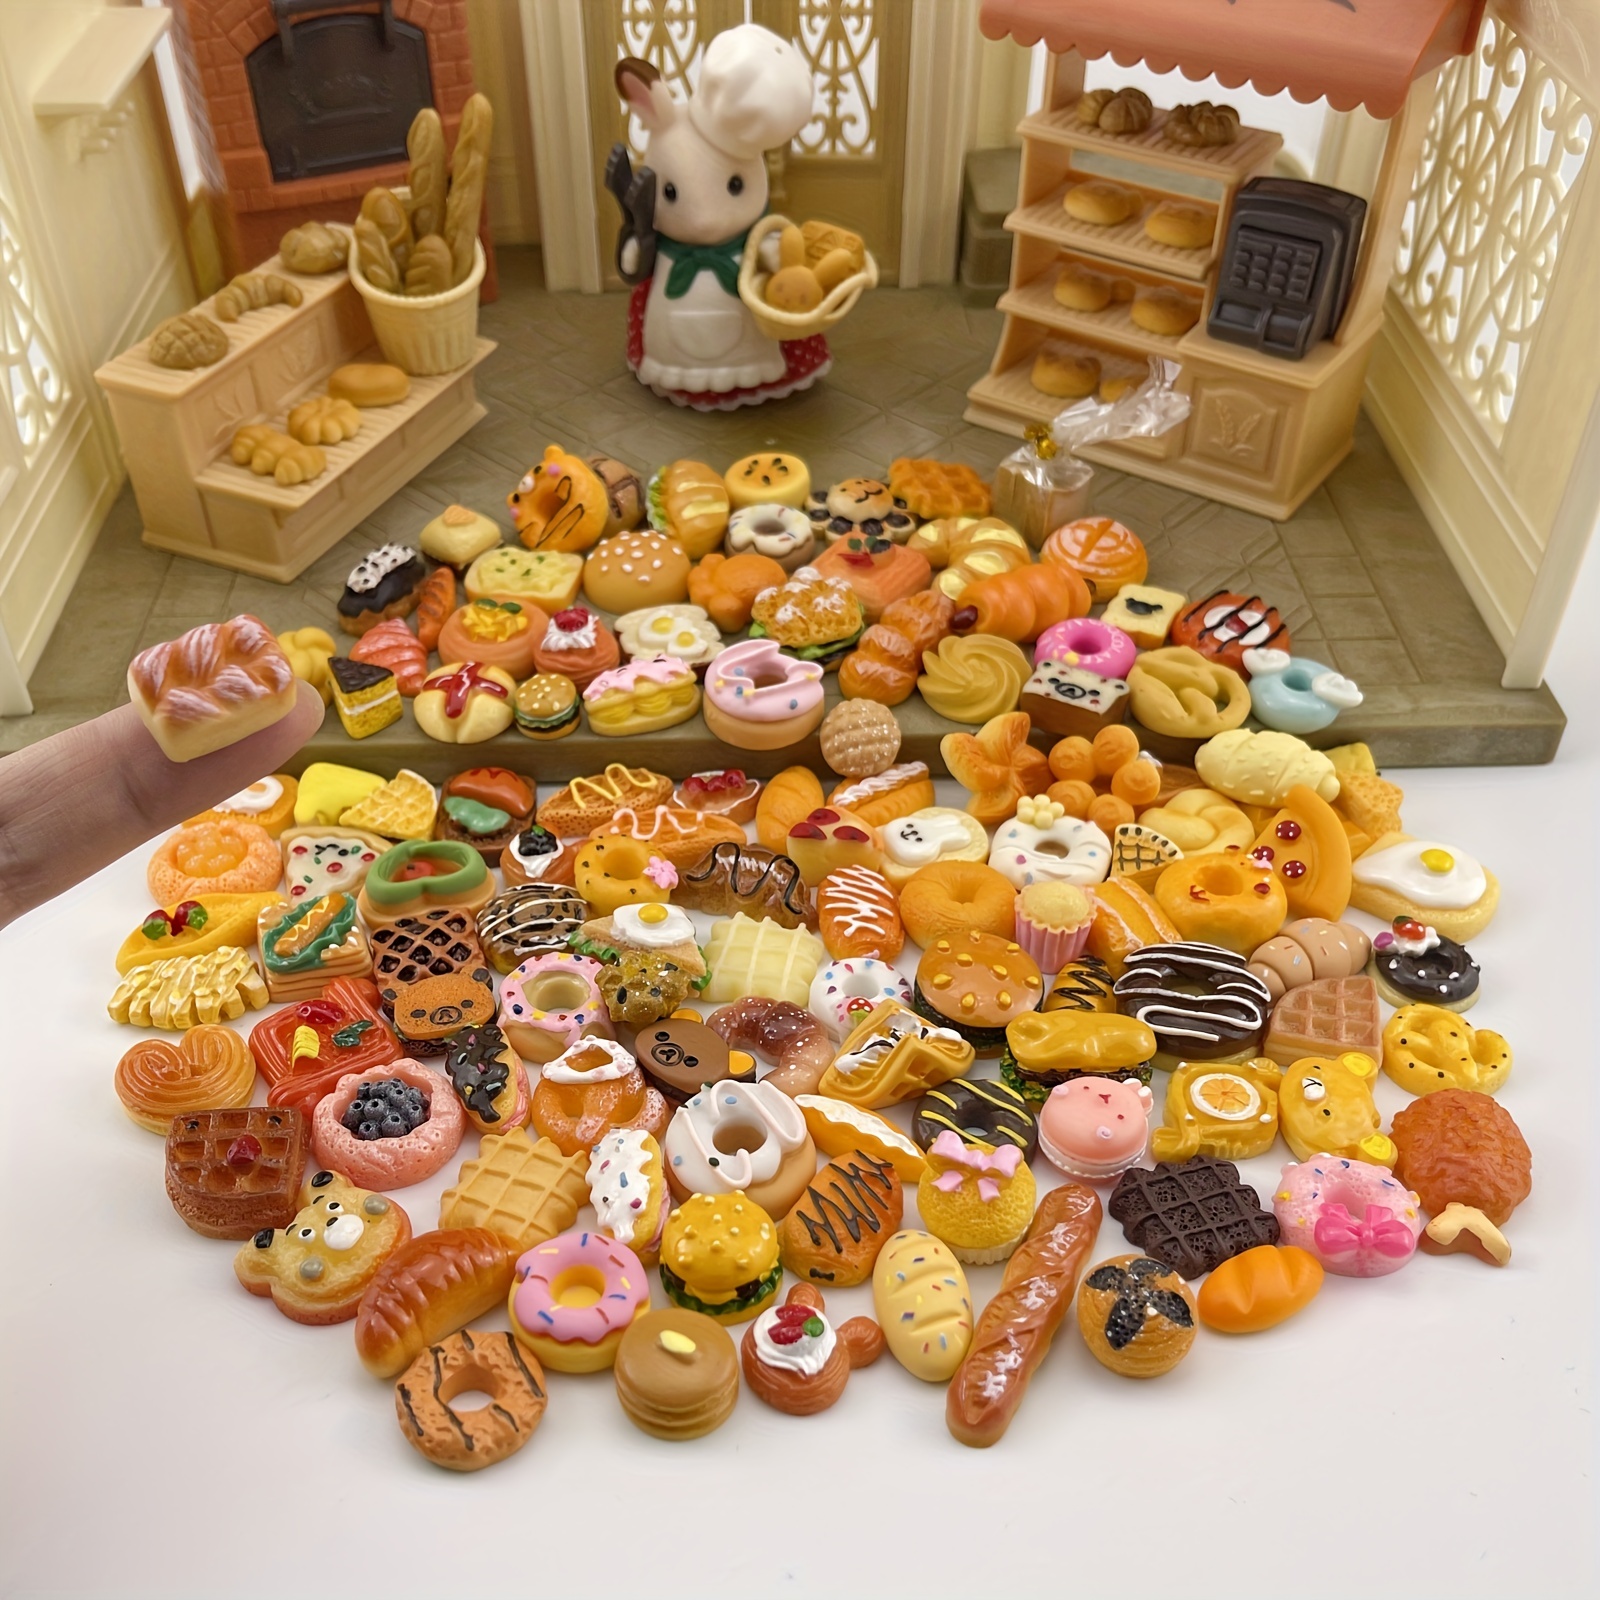 TIESOME Cibo in miniatura Bevanda 1:12 casa delle bambole, 50 pezzi in  resina cibo giocattolo set accessori per bambole mini cucina gioco piccola  decorazione torta per ragazzi ragazze mini drink cibo 